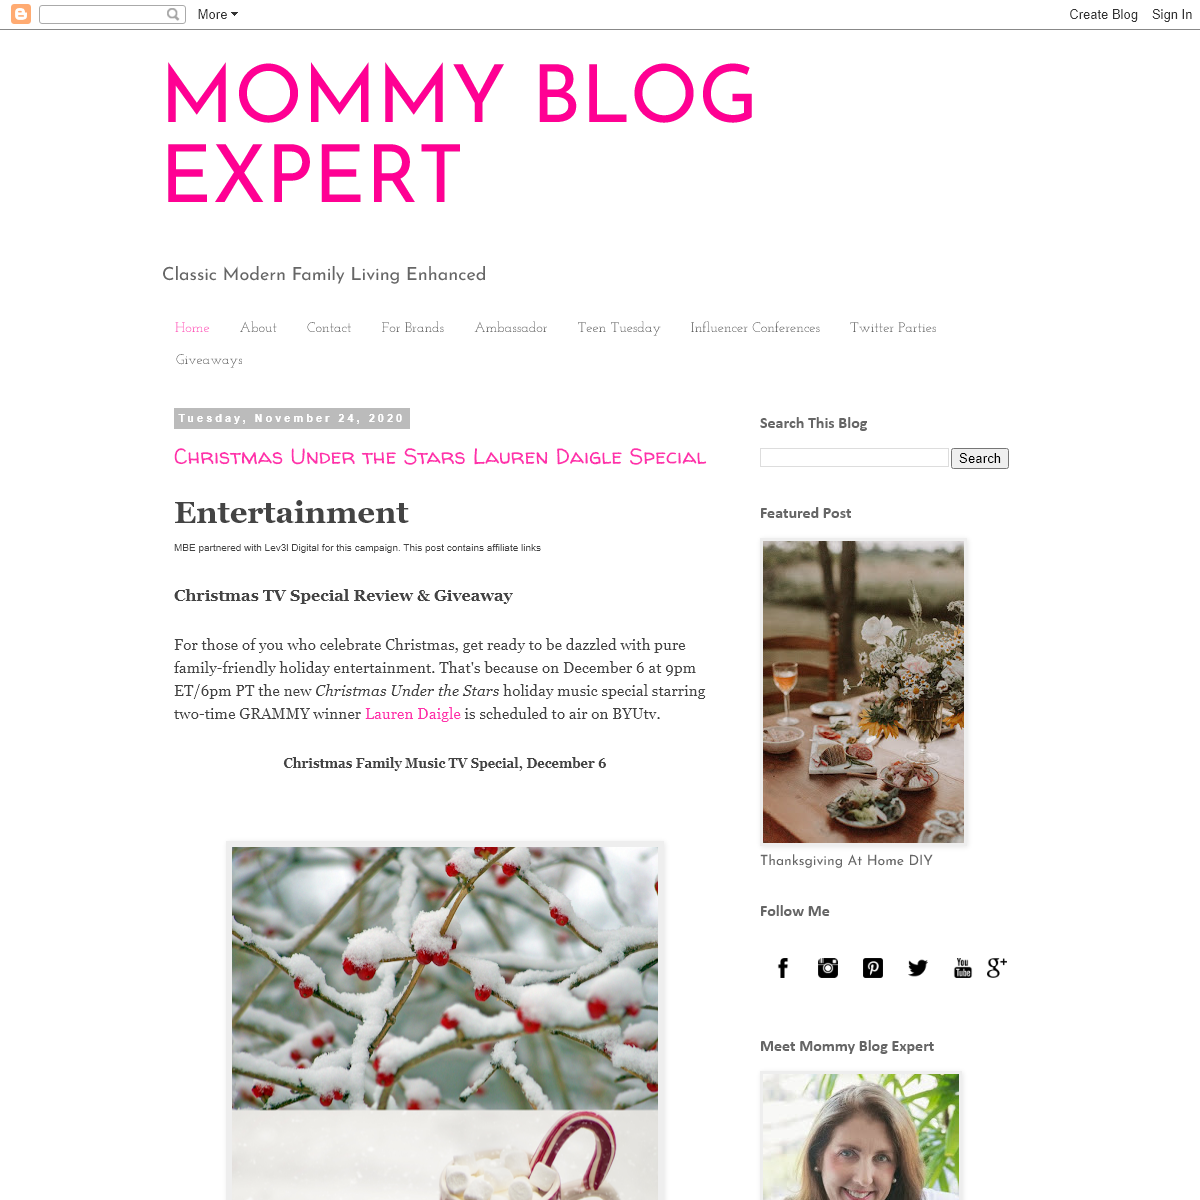 A complete backup of mommyblogexpert.com